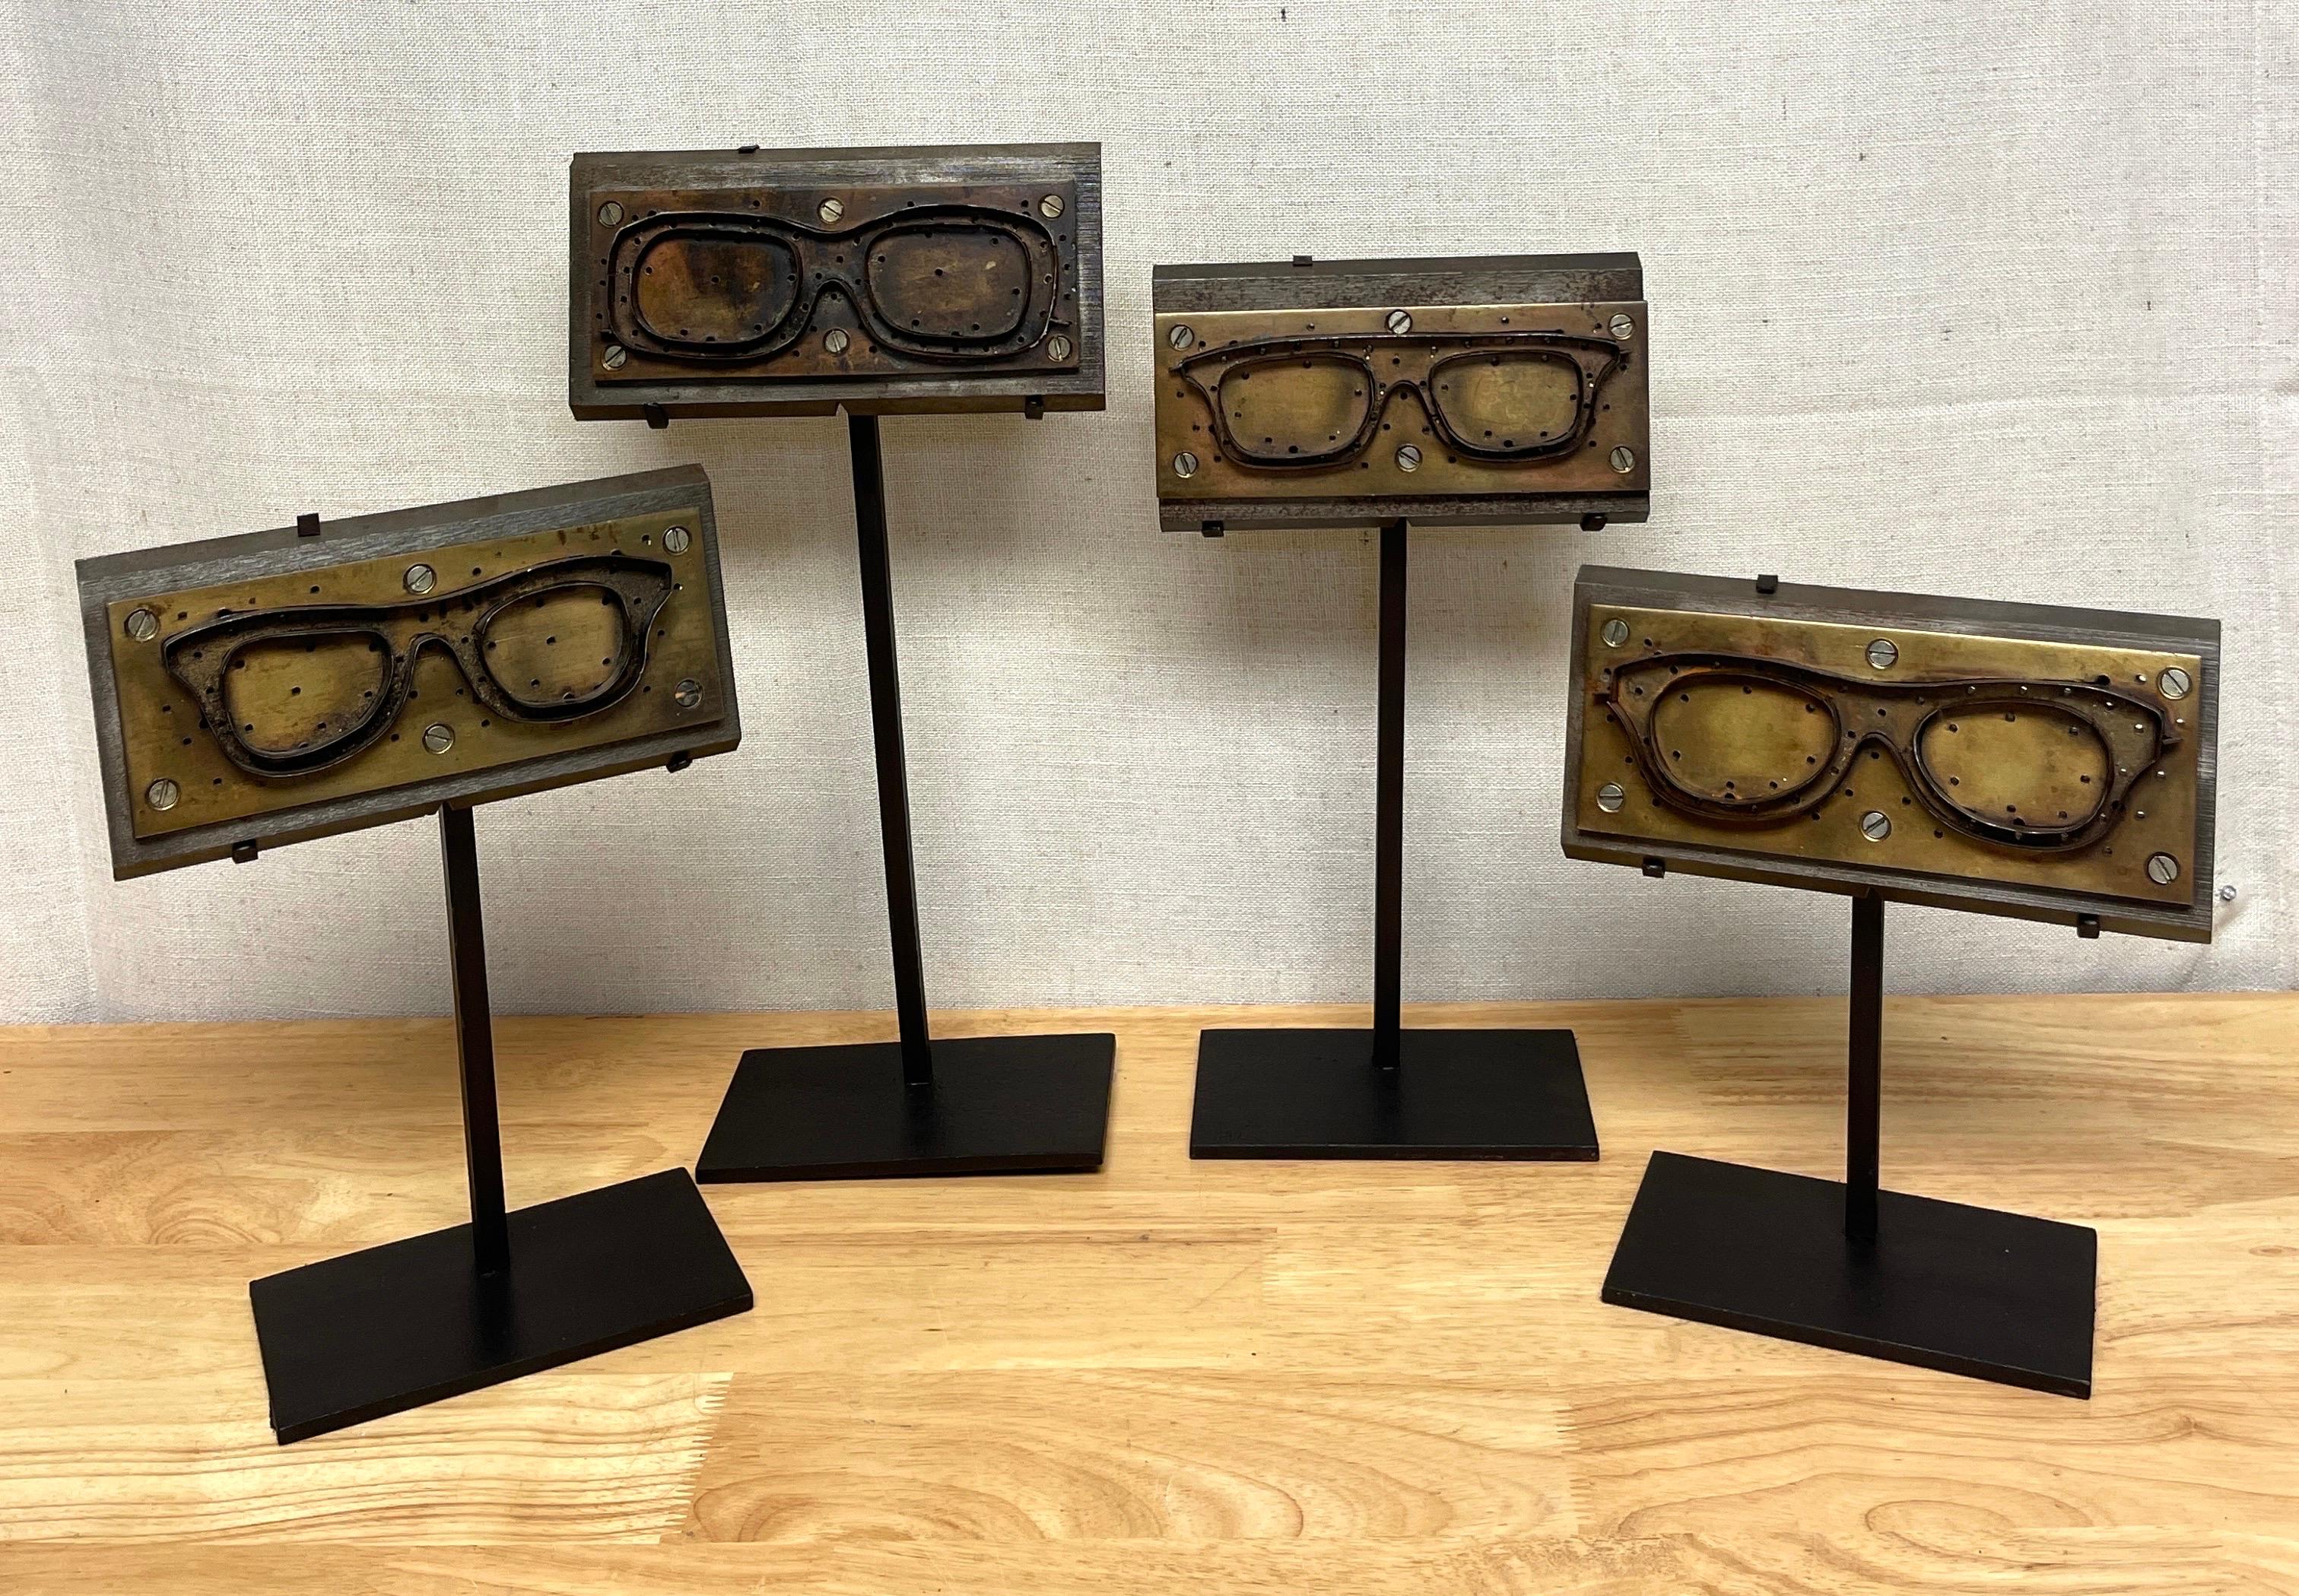 Sammlung musealer industrieller Augenglasfärbemittel/Formen
Eine sofortige Sammlung von vier einzigartigen industriellen Messing- und Eisenformen für Brillengestelle, jede einzelne museal auf späteren Eisenständern montiert. 
Unterschiedliche Höhen